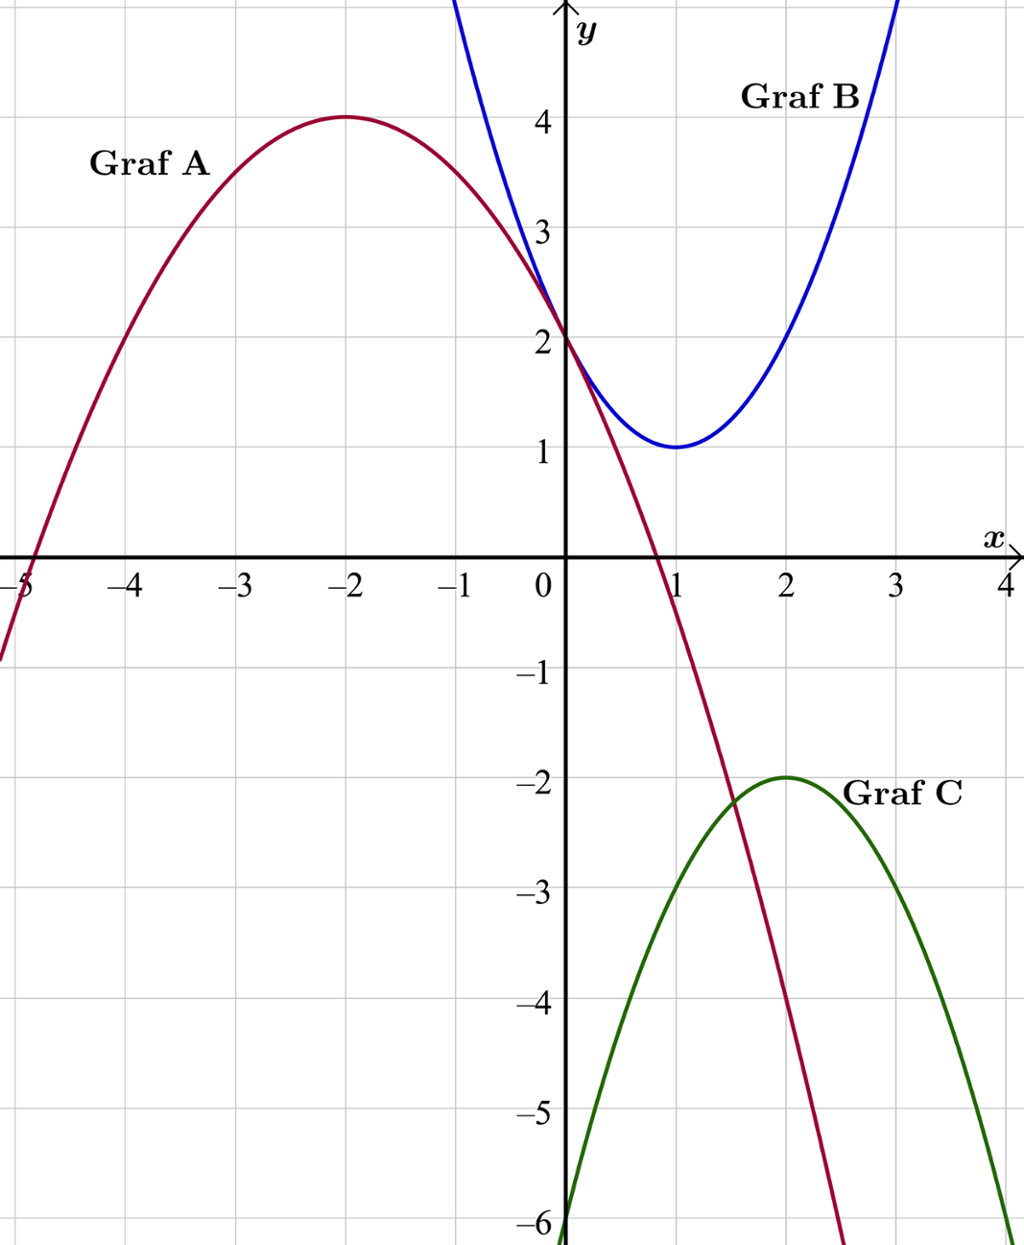 Grafene til tre ulike andregradsfunksjoner er tegna i et koordinatsystem med x-verdier fra minus 5 til 4. Graf A har et toppunkt med koordinatene minus 2 og 4 og nullpunkter for x er lik minus 4,8 og 0,8. Graf B har et bunnpunkt med koordinatene 1 og 1 og ingen nullpunkter. Graf C har et toppunkt med koordinatene 2 og minus 2 og ingen nullpunkter. Skjermutklipp.